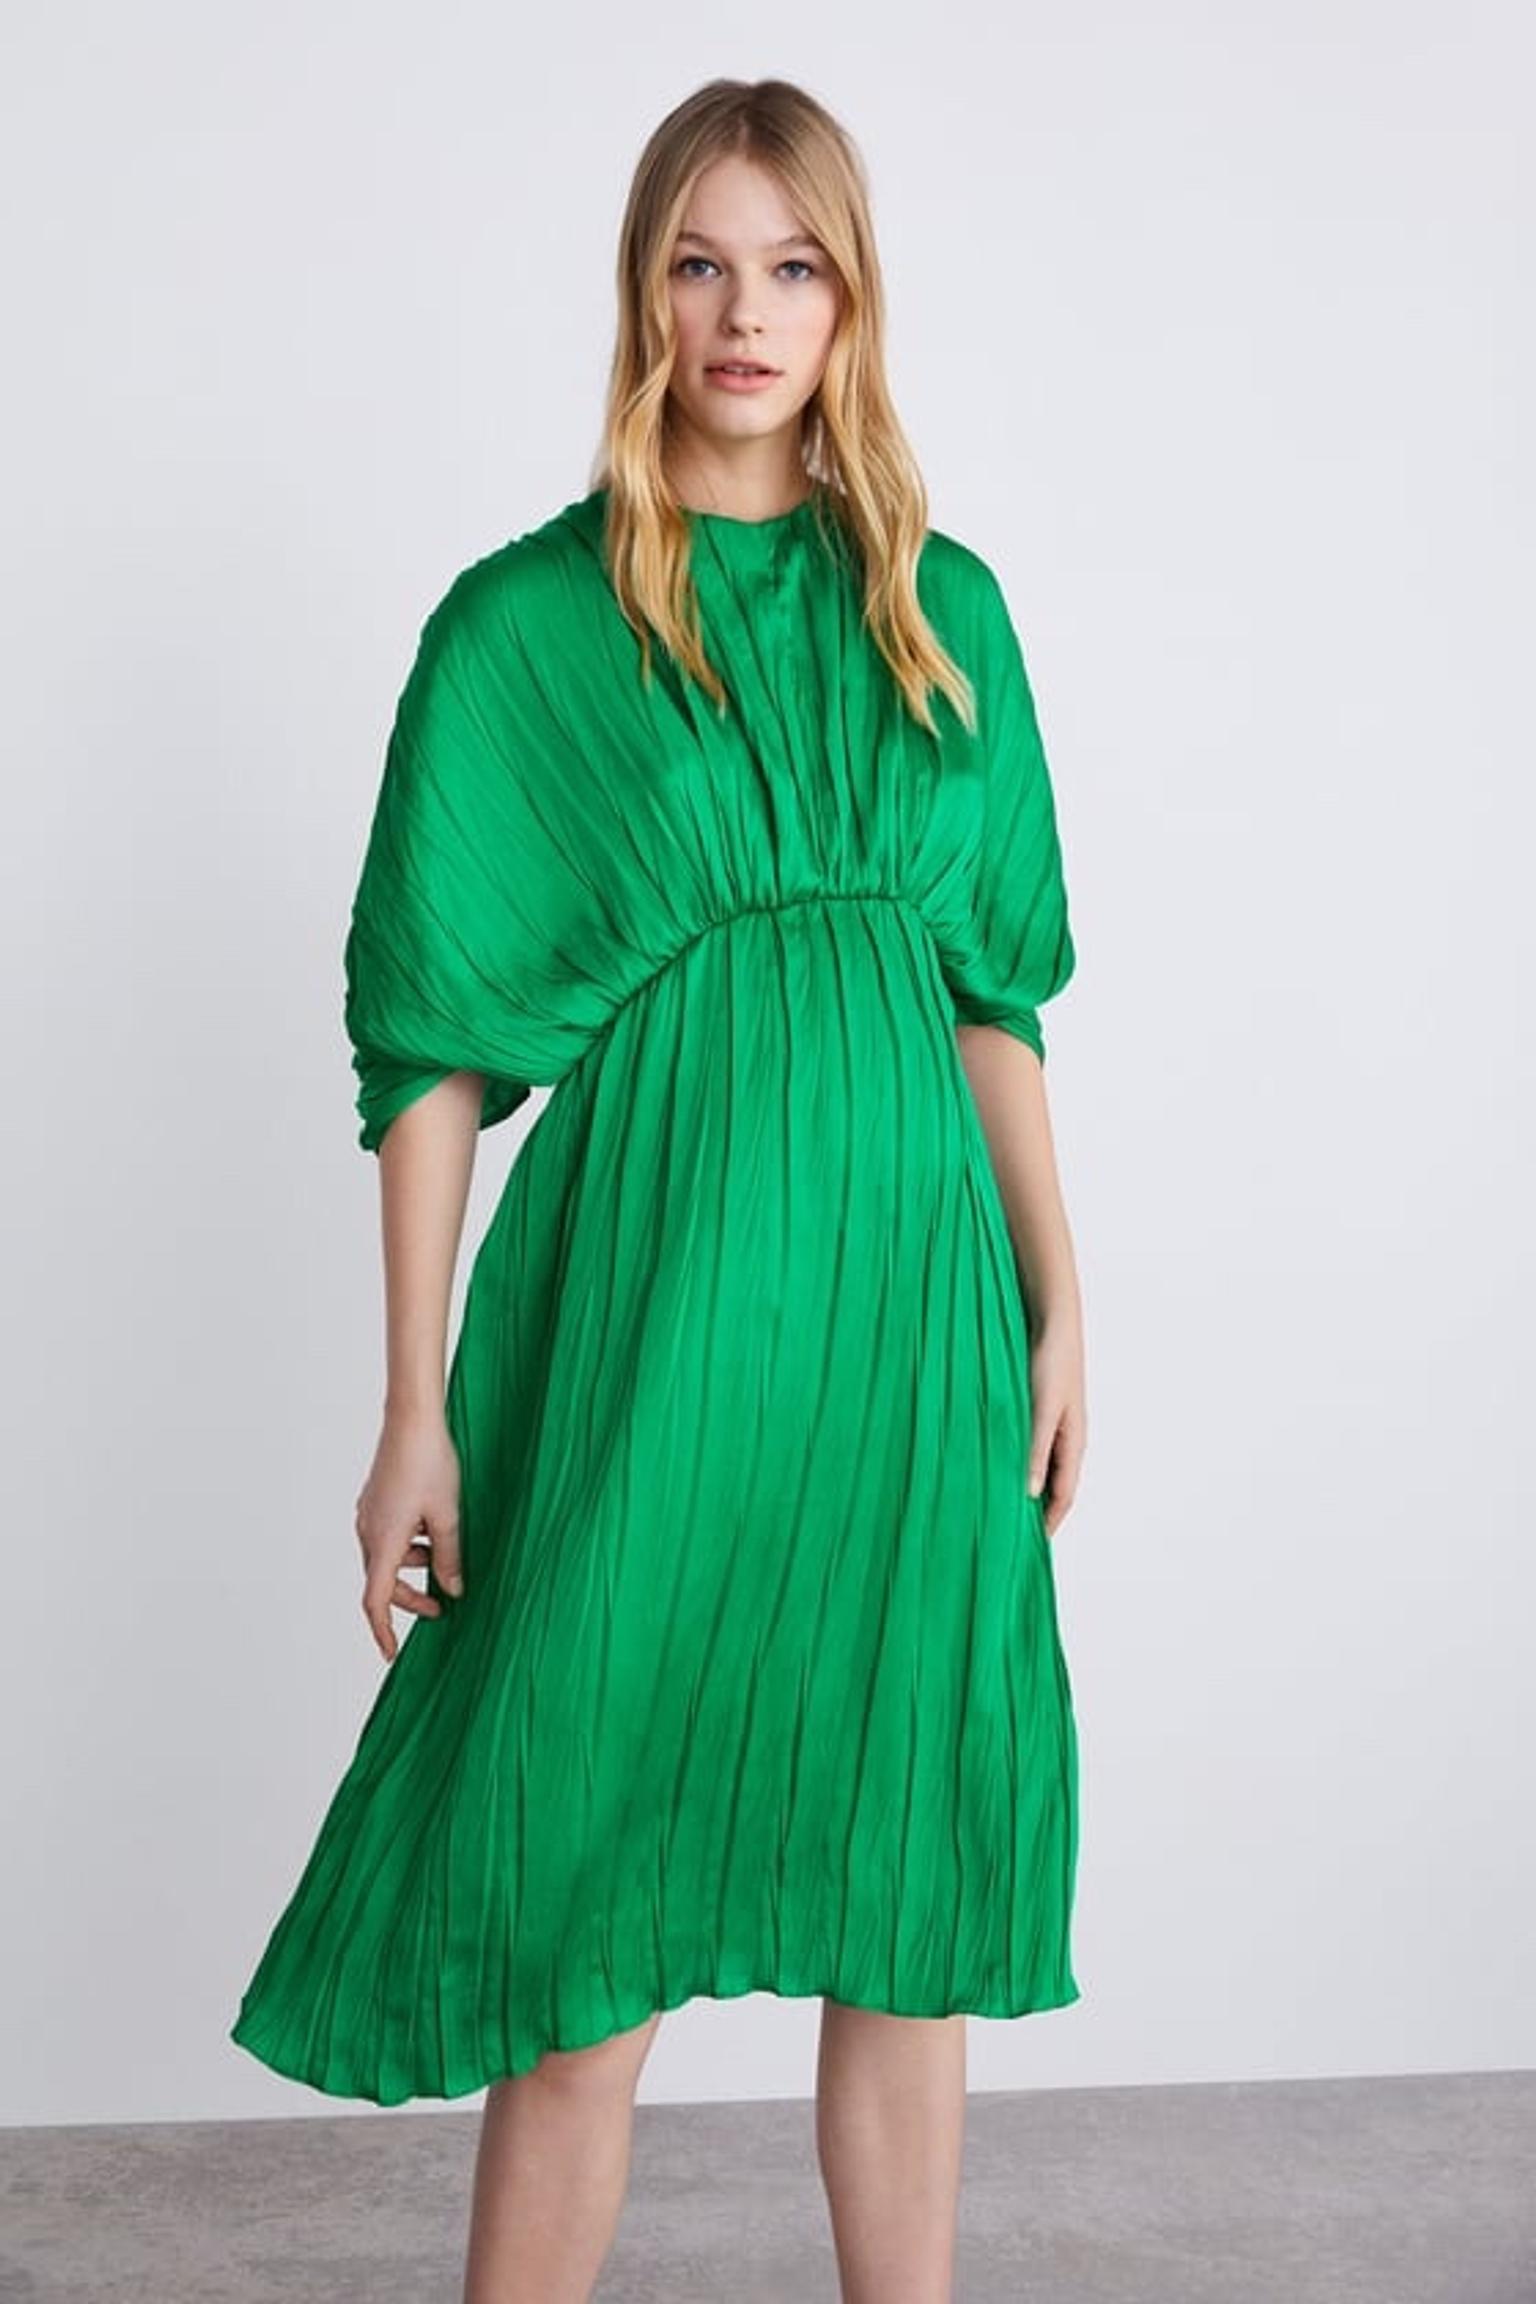 zara green dress 2019